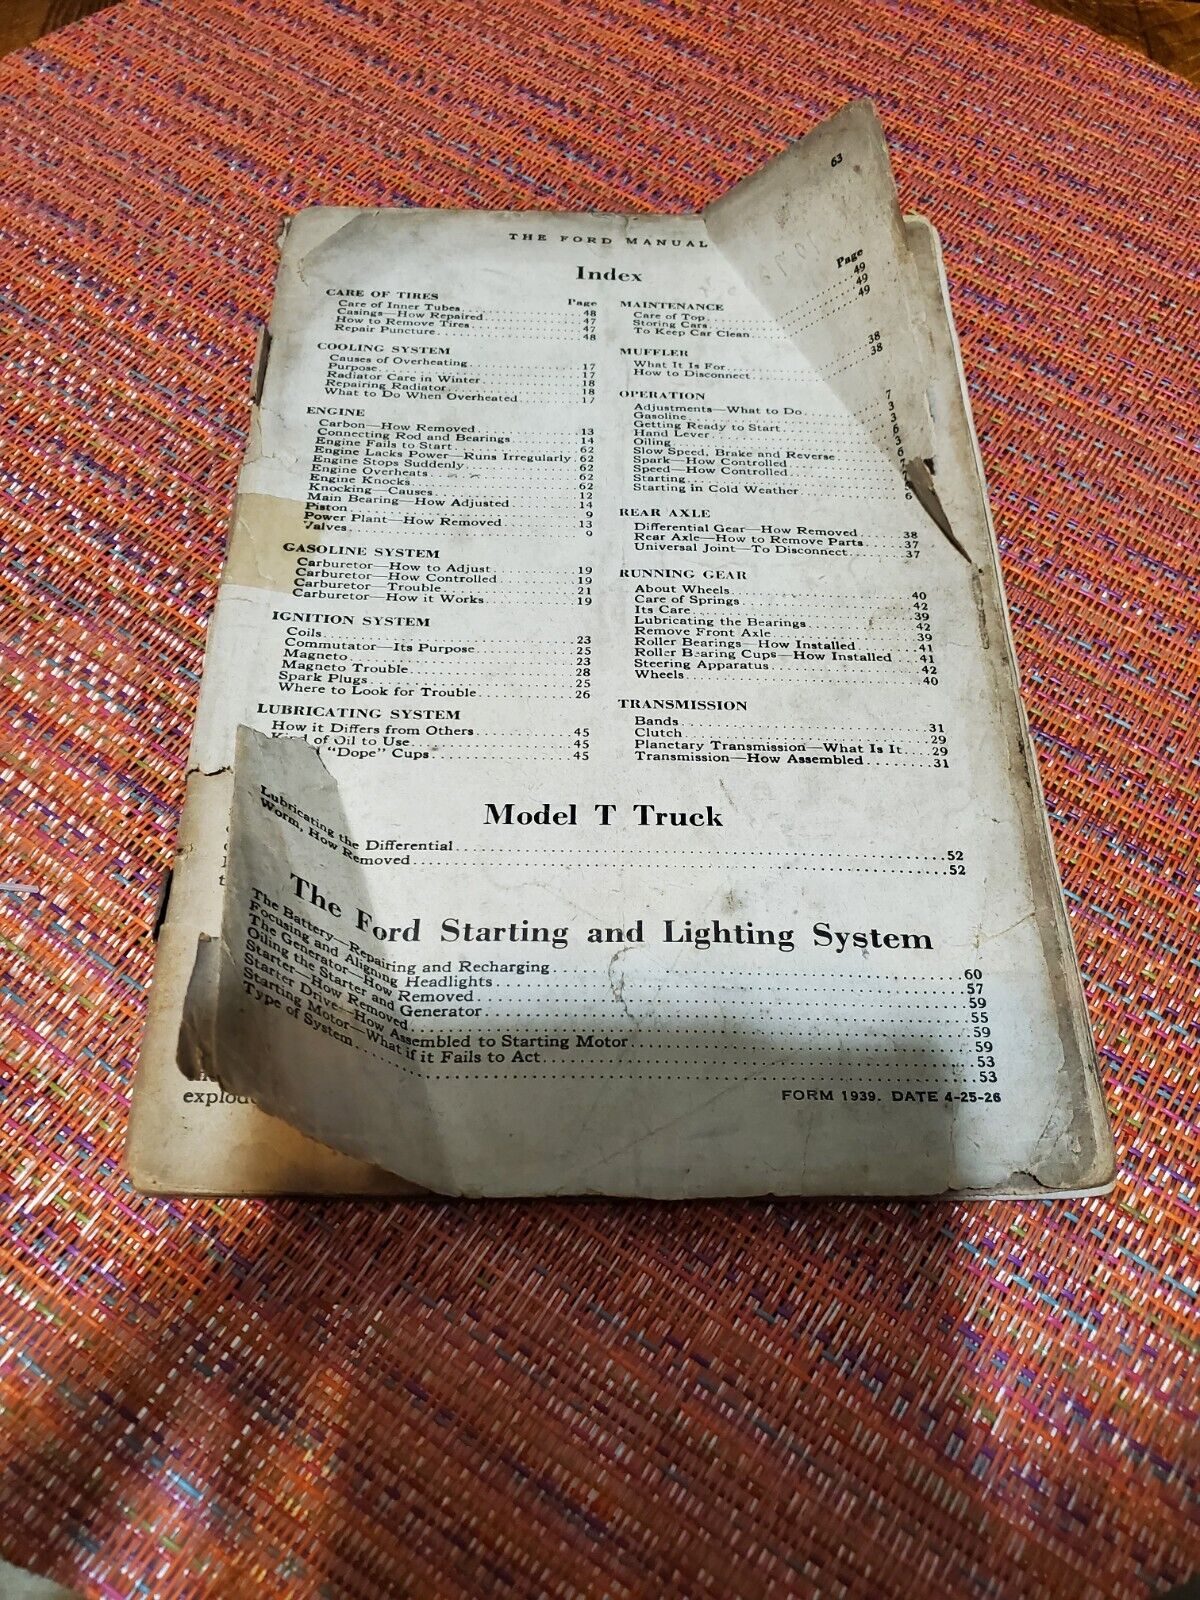 Original 1926 The Ford Manual Car Maintenance Book Diagrams